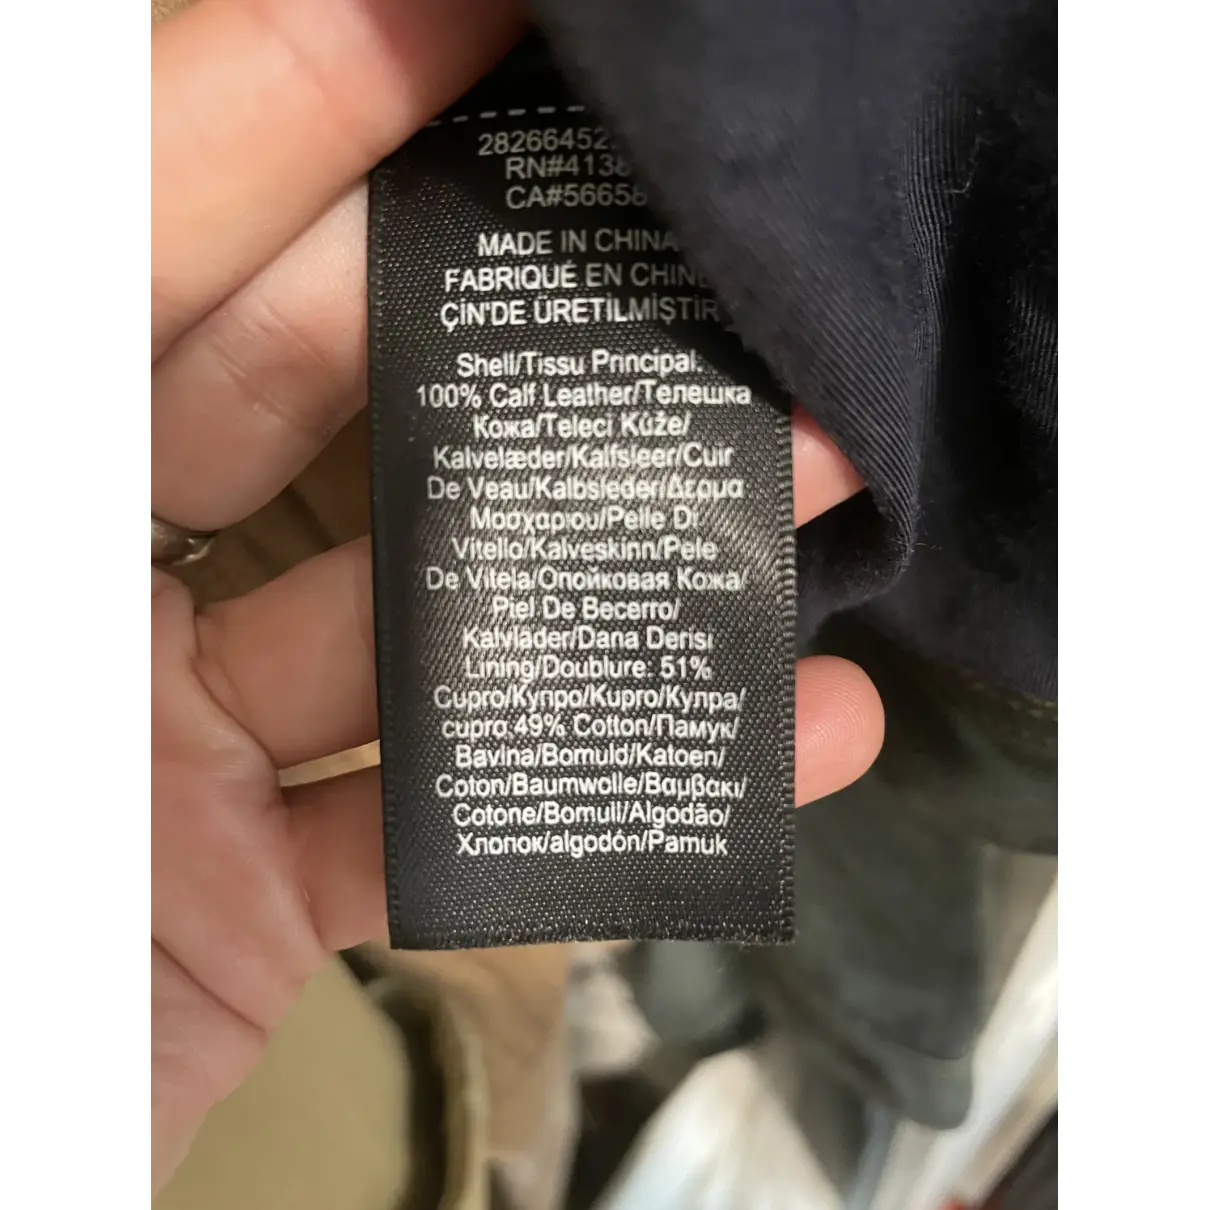 Jacket Ralph Lauren Collection